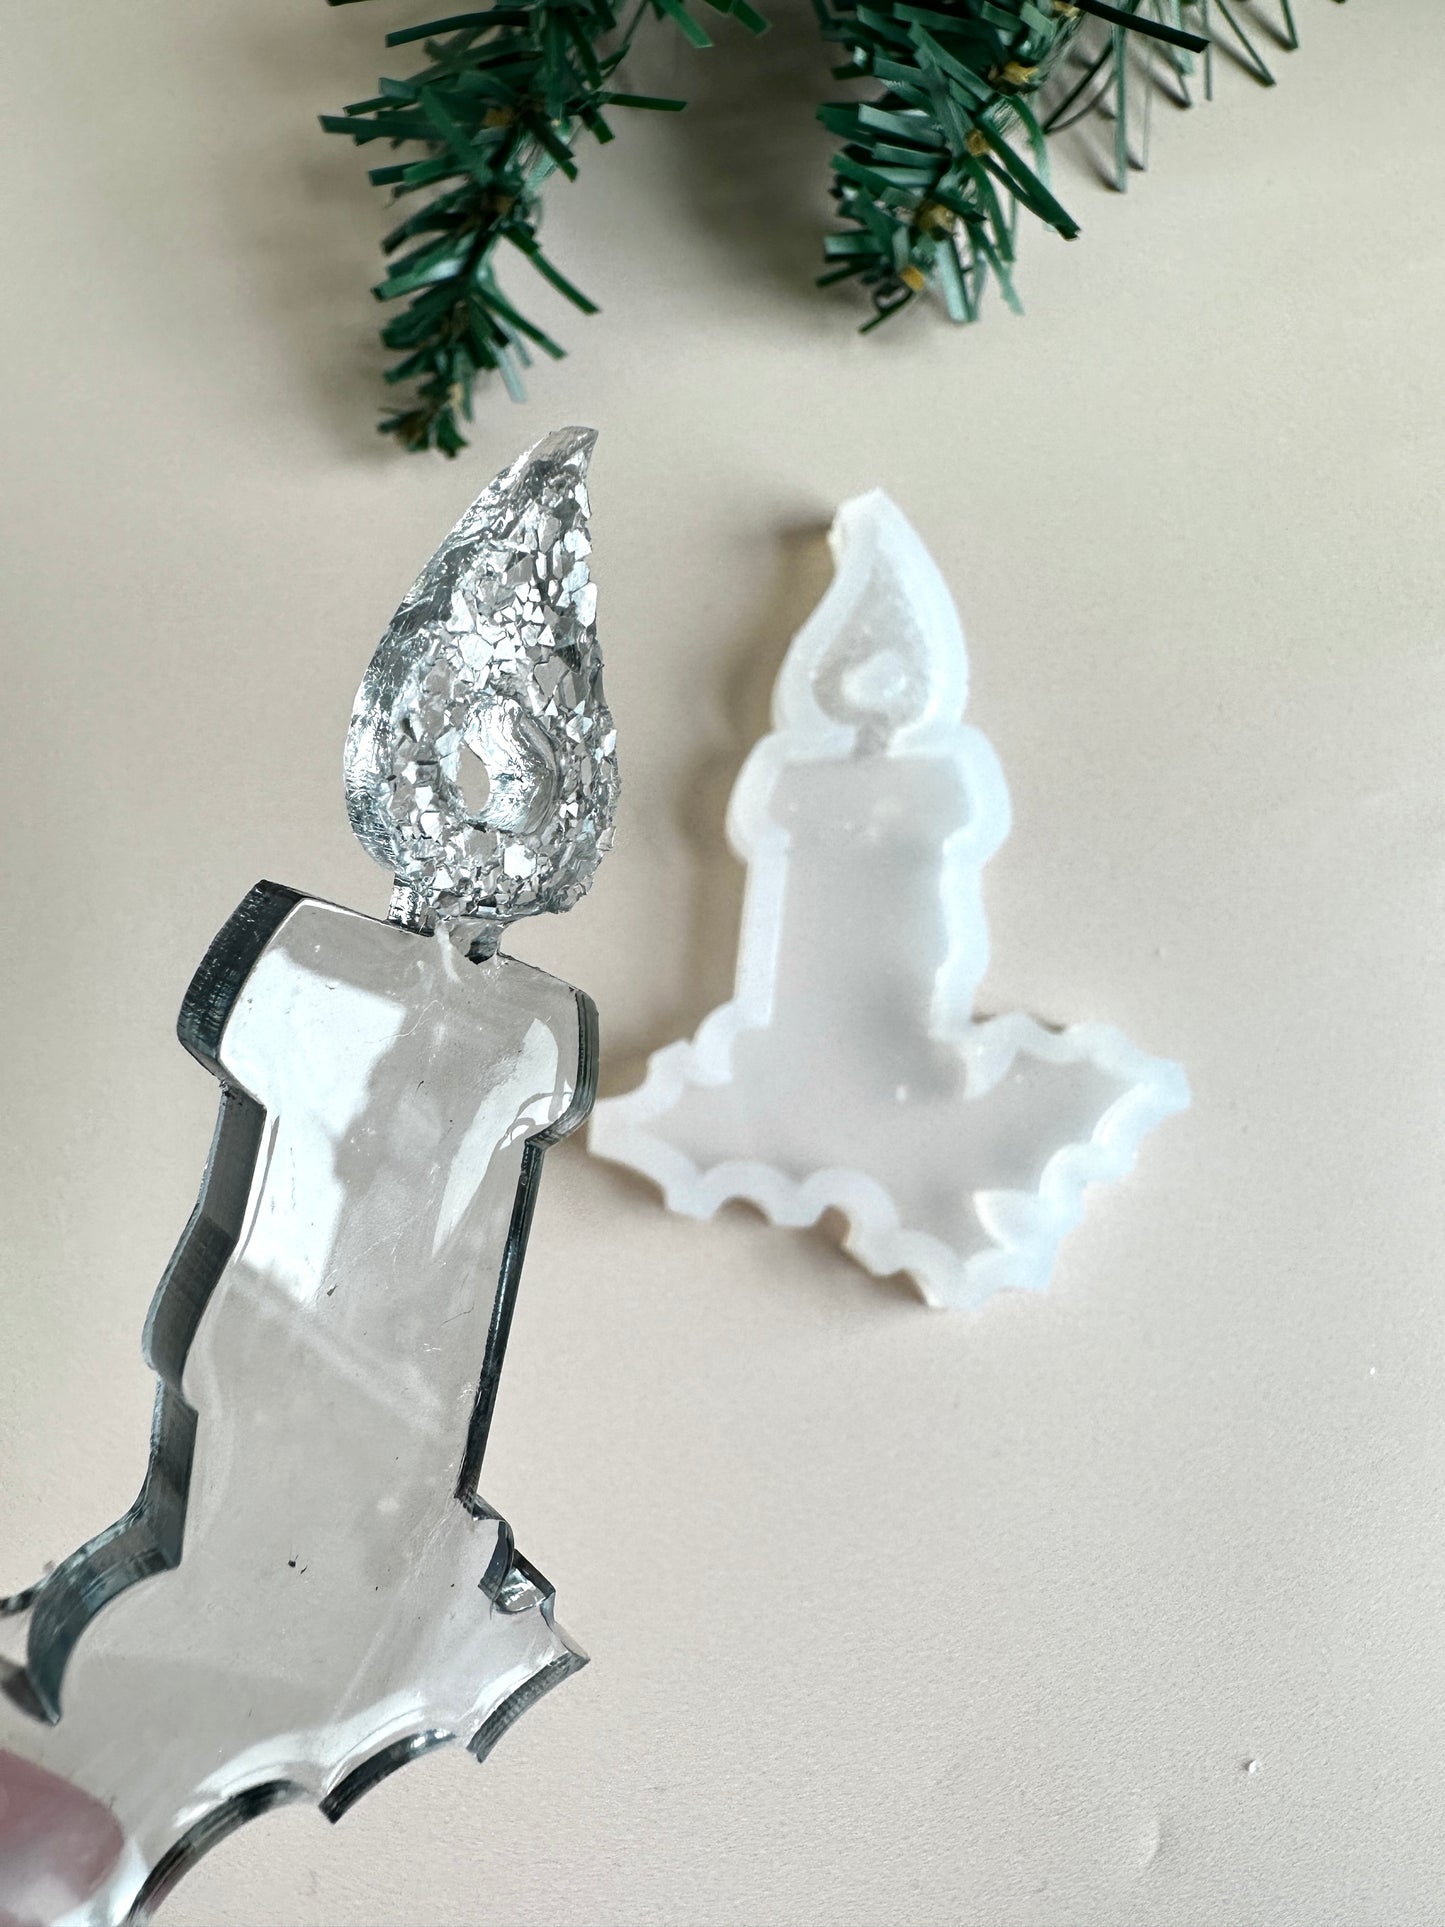 Innovative brennende Kerze, Weihnachtsbaumspielzeug mit Kristallen, Silikonform für Kunstharz, kreieren Sie einzigartige Weihnachtsdekorationen, tolles Geschenk